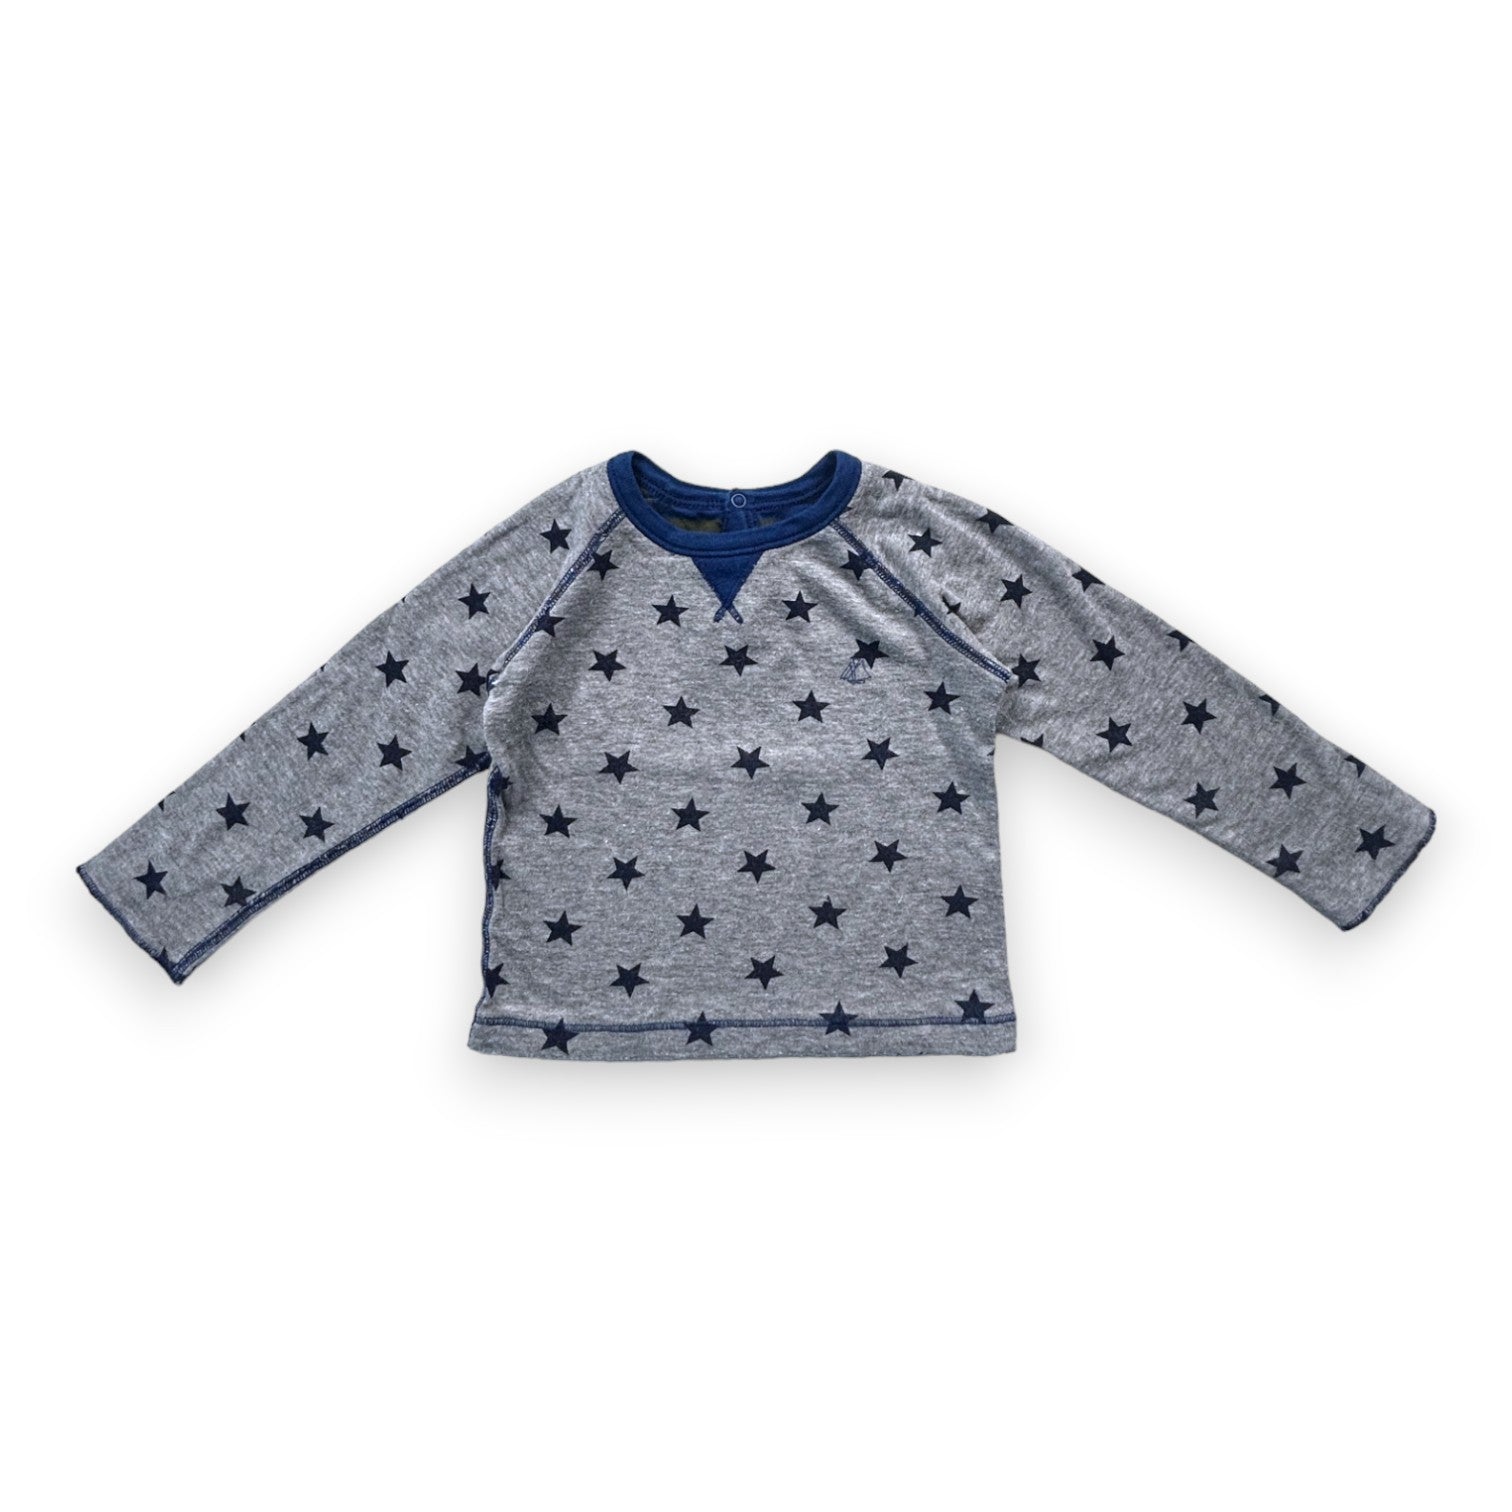 PETIT BATEAU - T-shirt gris manches longues étoiles bleu - 18 mois